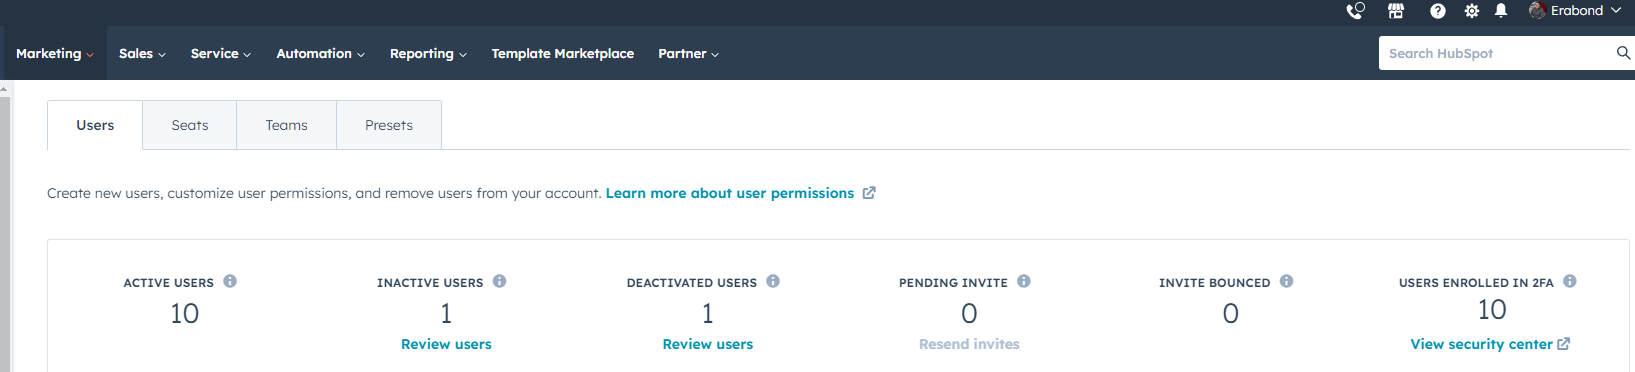 screenshot of hubspot account user view